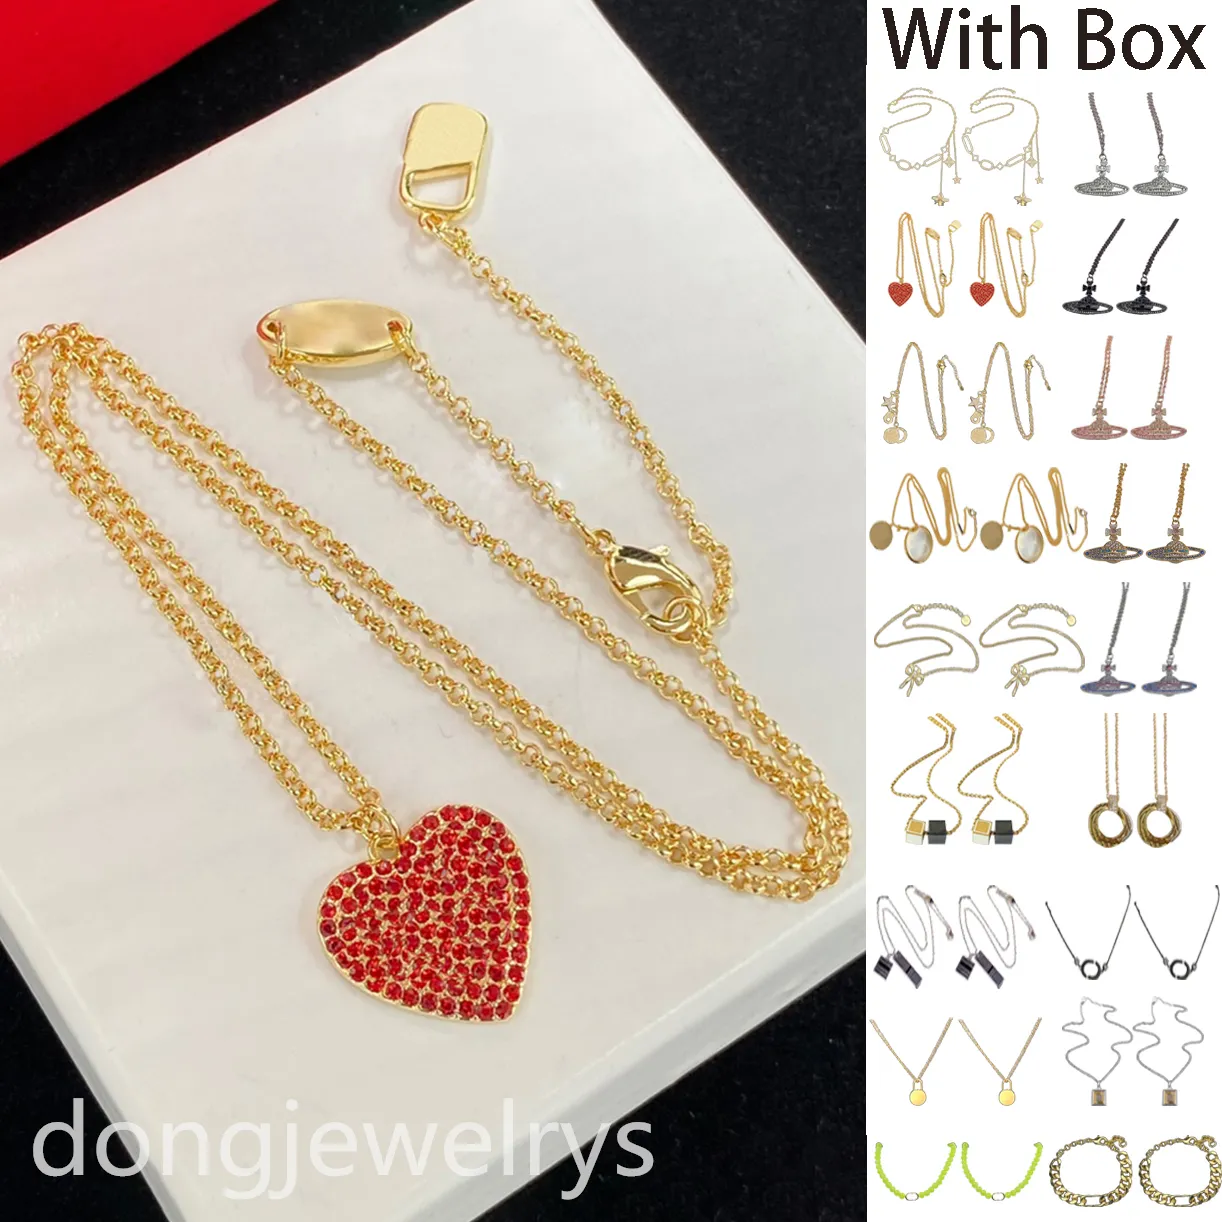 Collar de diseñador de diseñador cadenas colgantes de oro lindos joyas de estrella roja crystal corazón colgante de flores rosadas dulces dongjewelrys